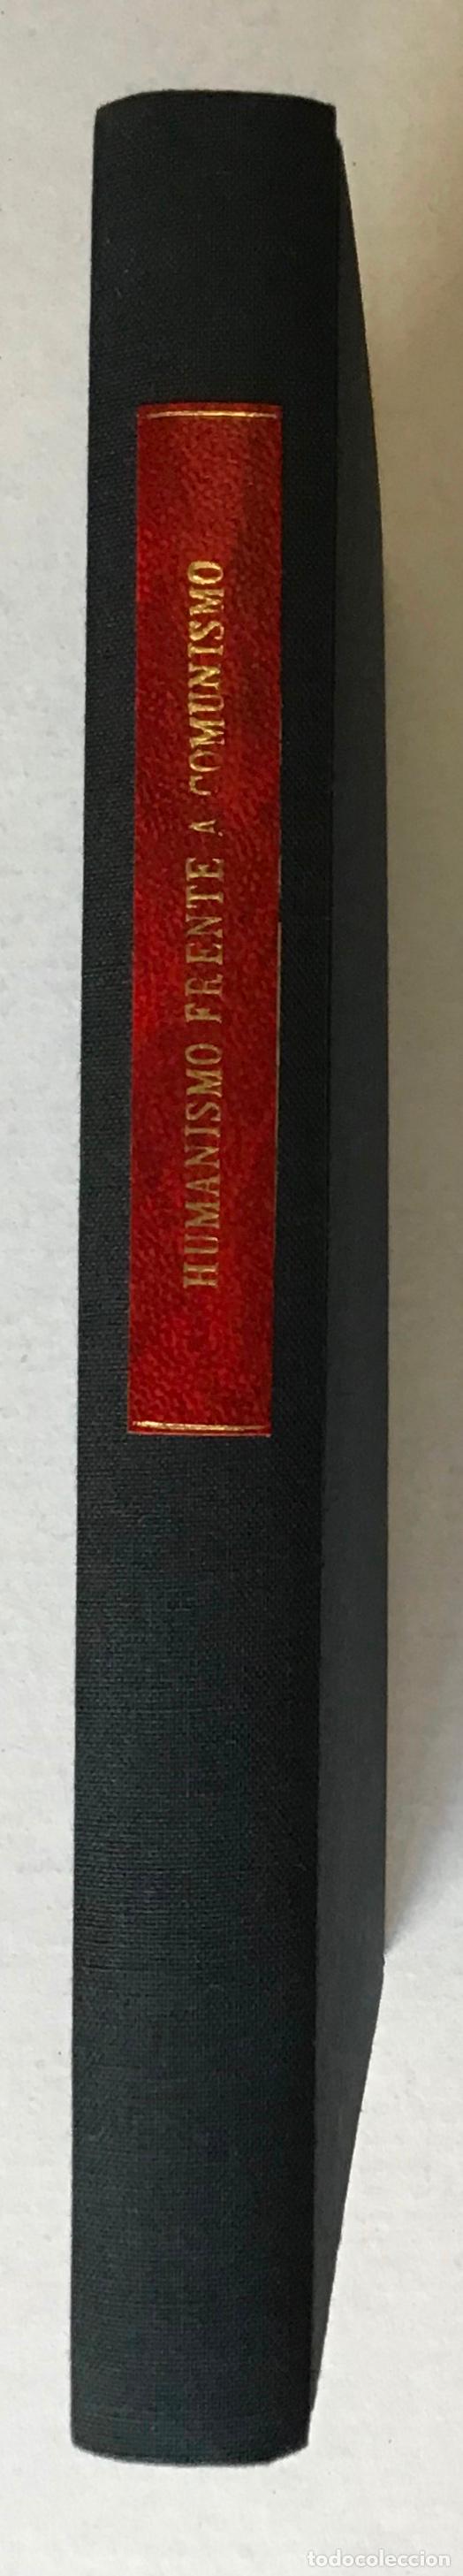 Libros antiguos: HUMANISMO FRENTE A COMUNISMO. La primera monografia anticomunista publicada en el mundo... - Foto 2 - 208833635